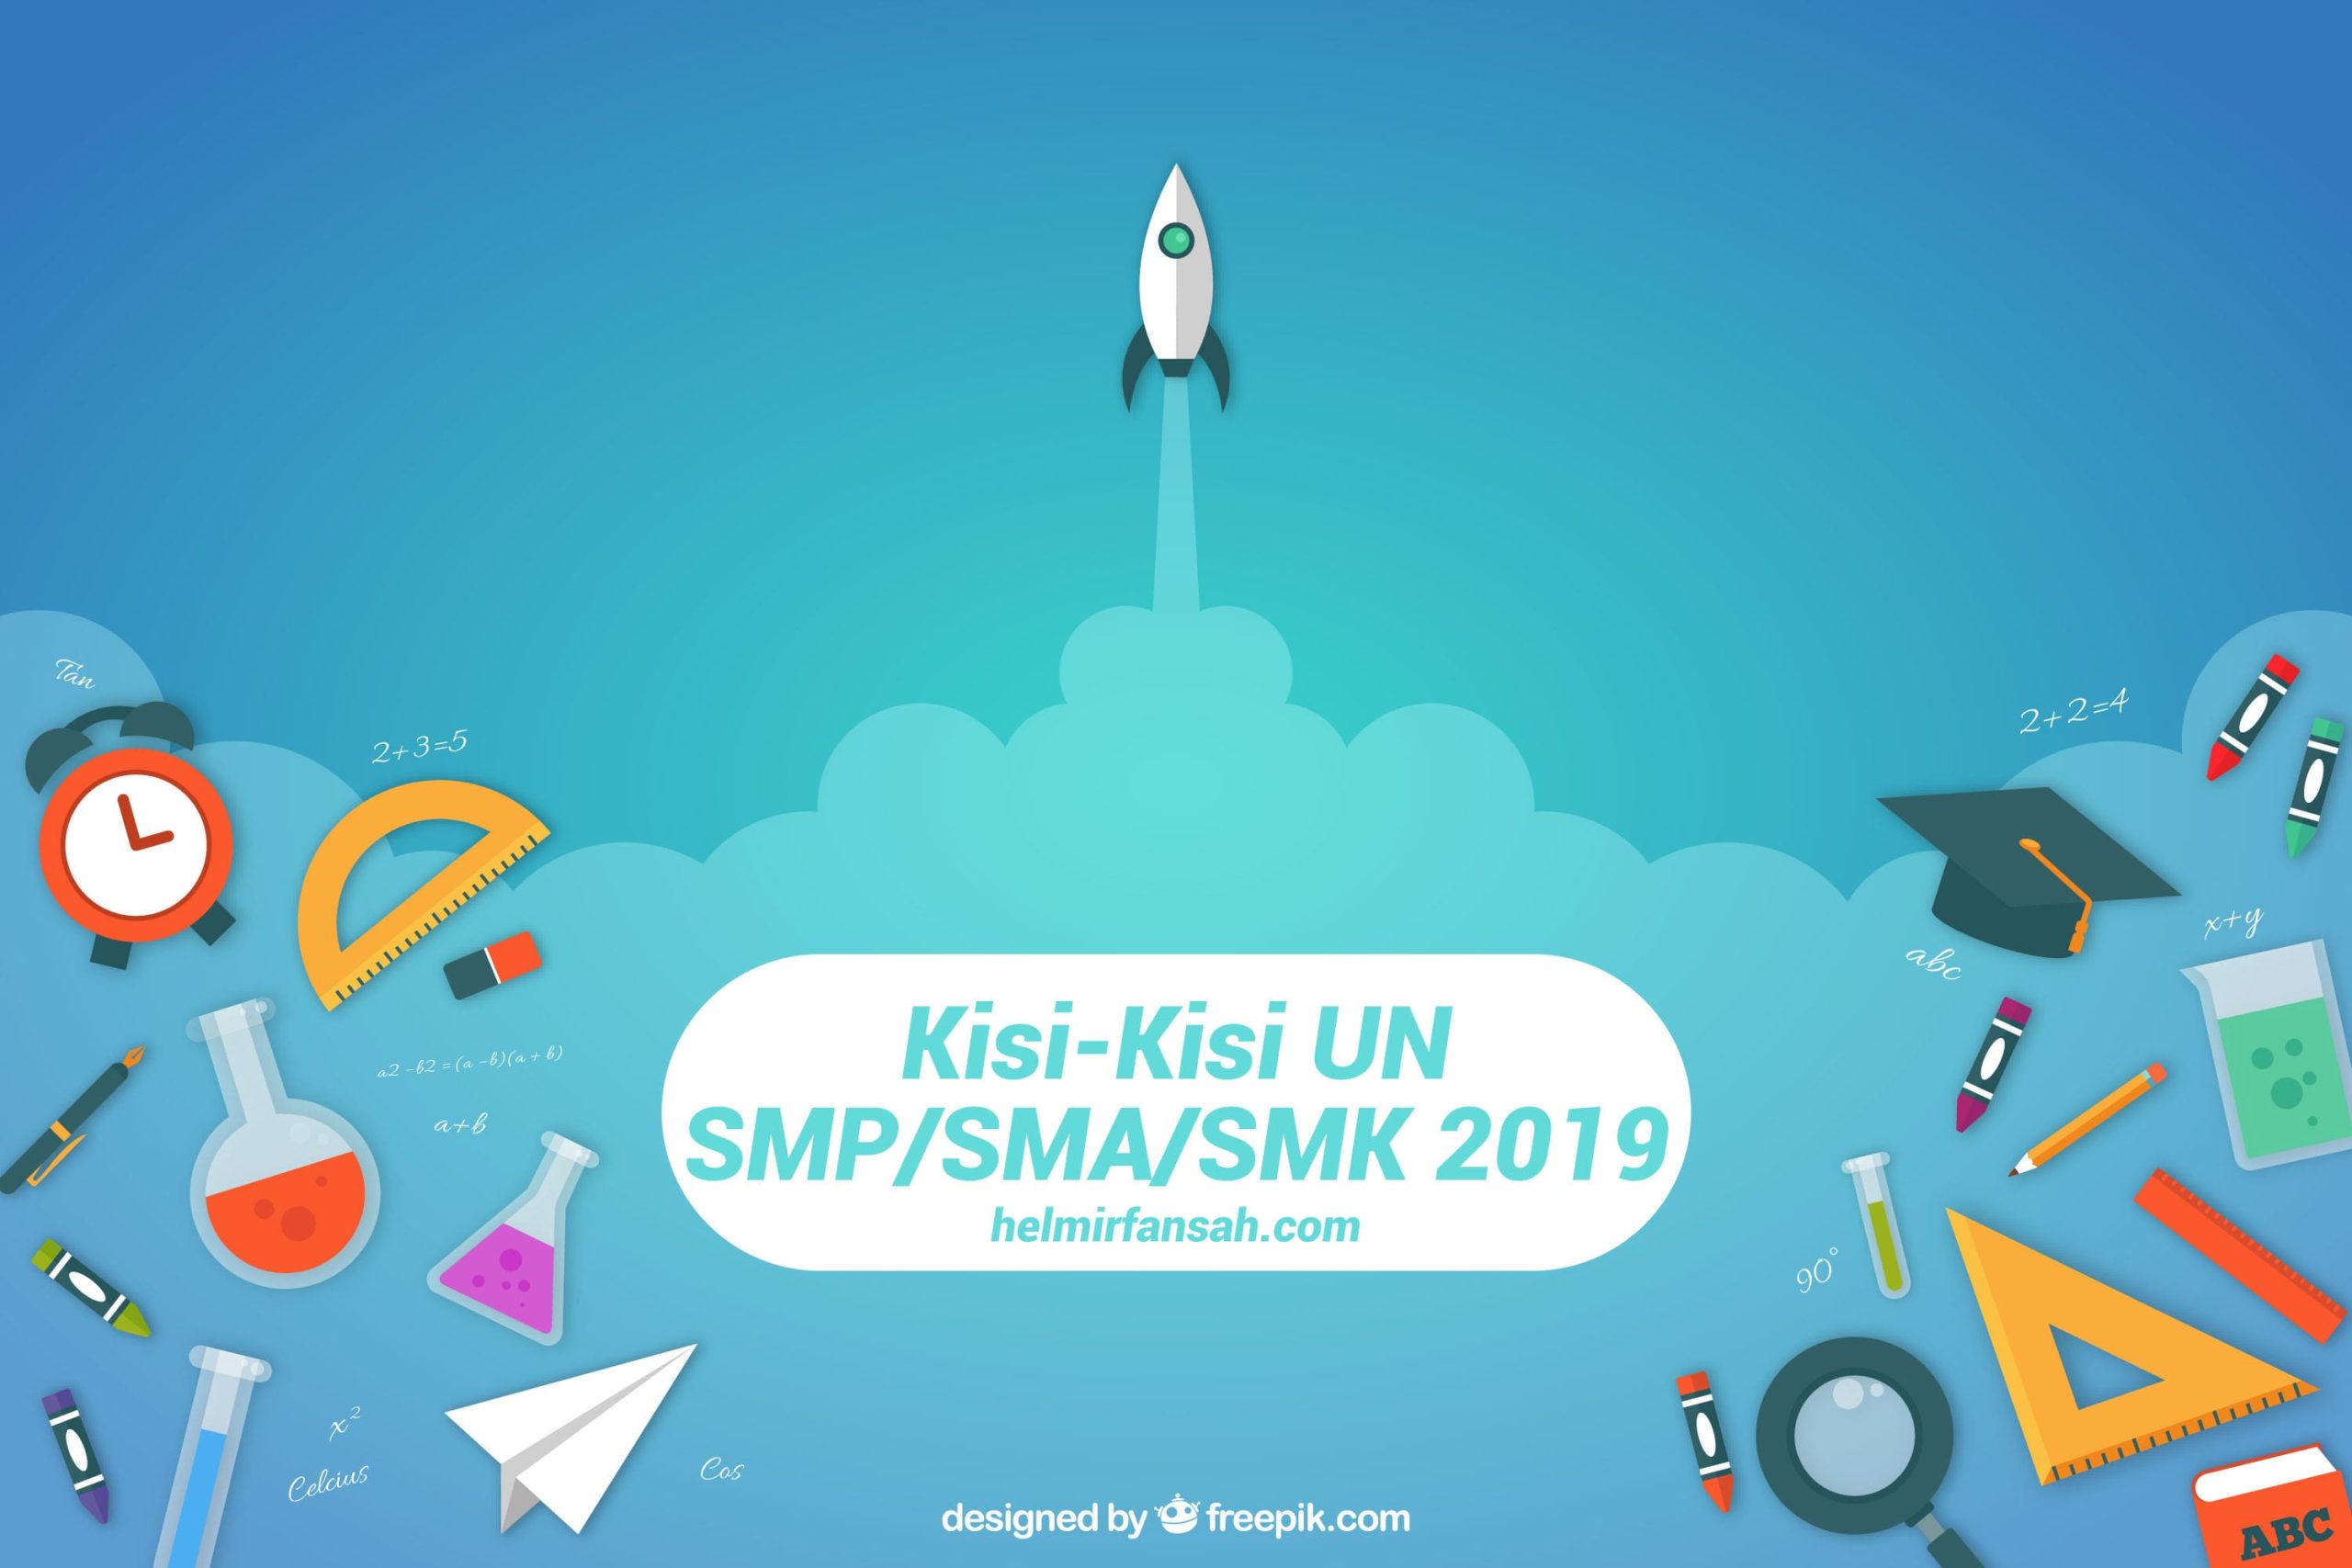 [LENGKAP] Kisi-Kisi UN SMP/SMA/SMK 2019